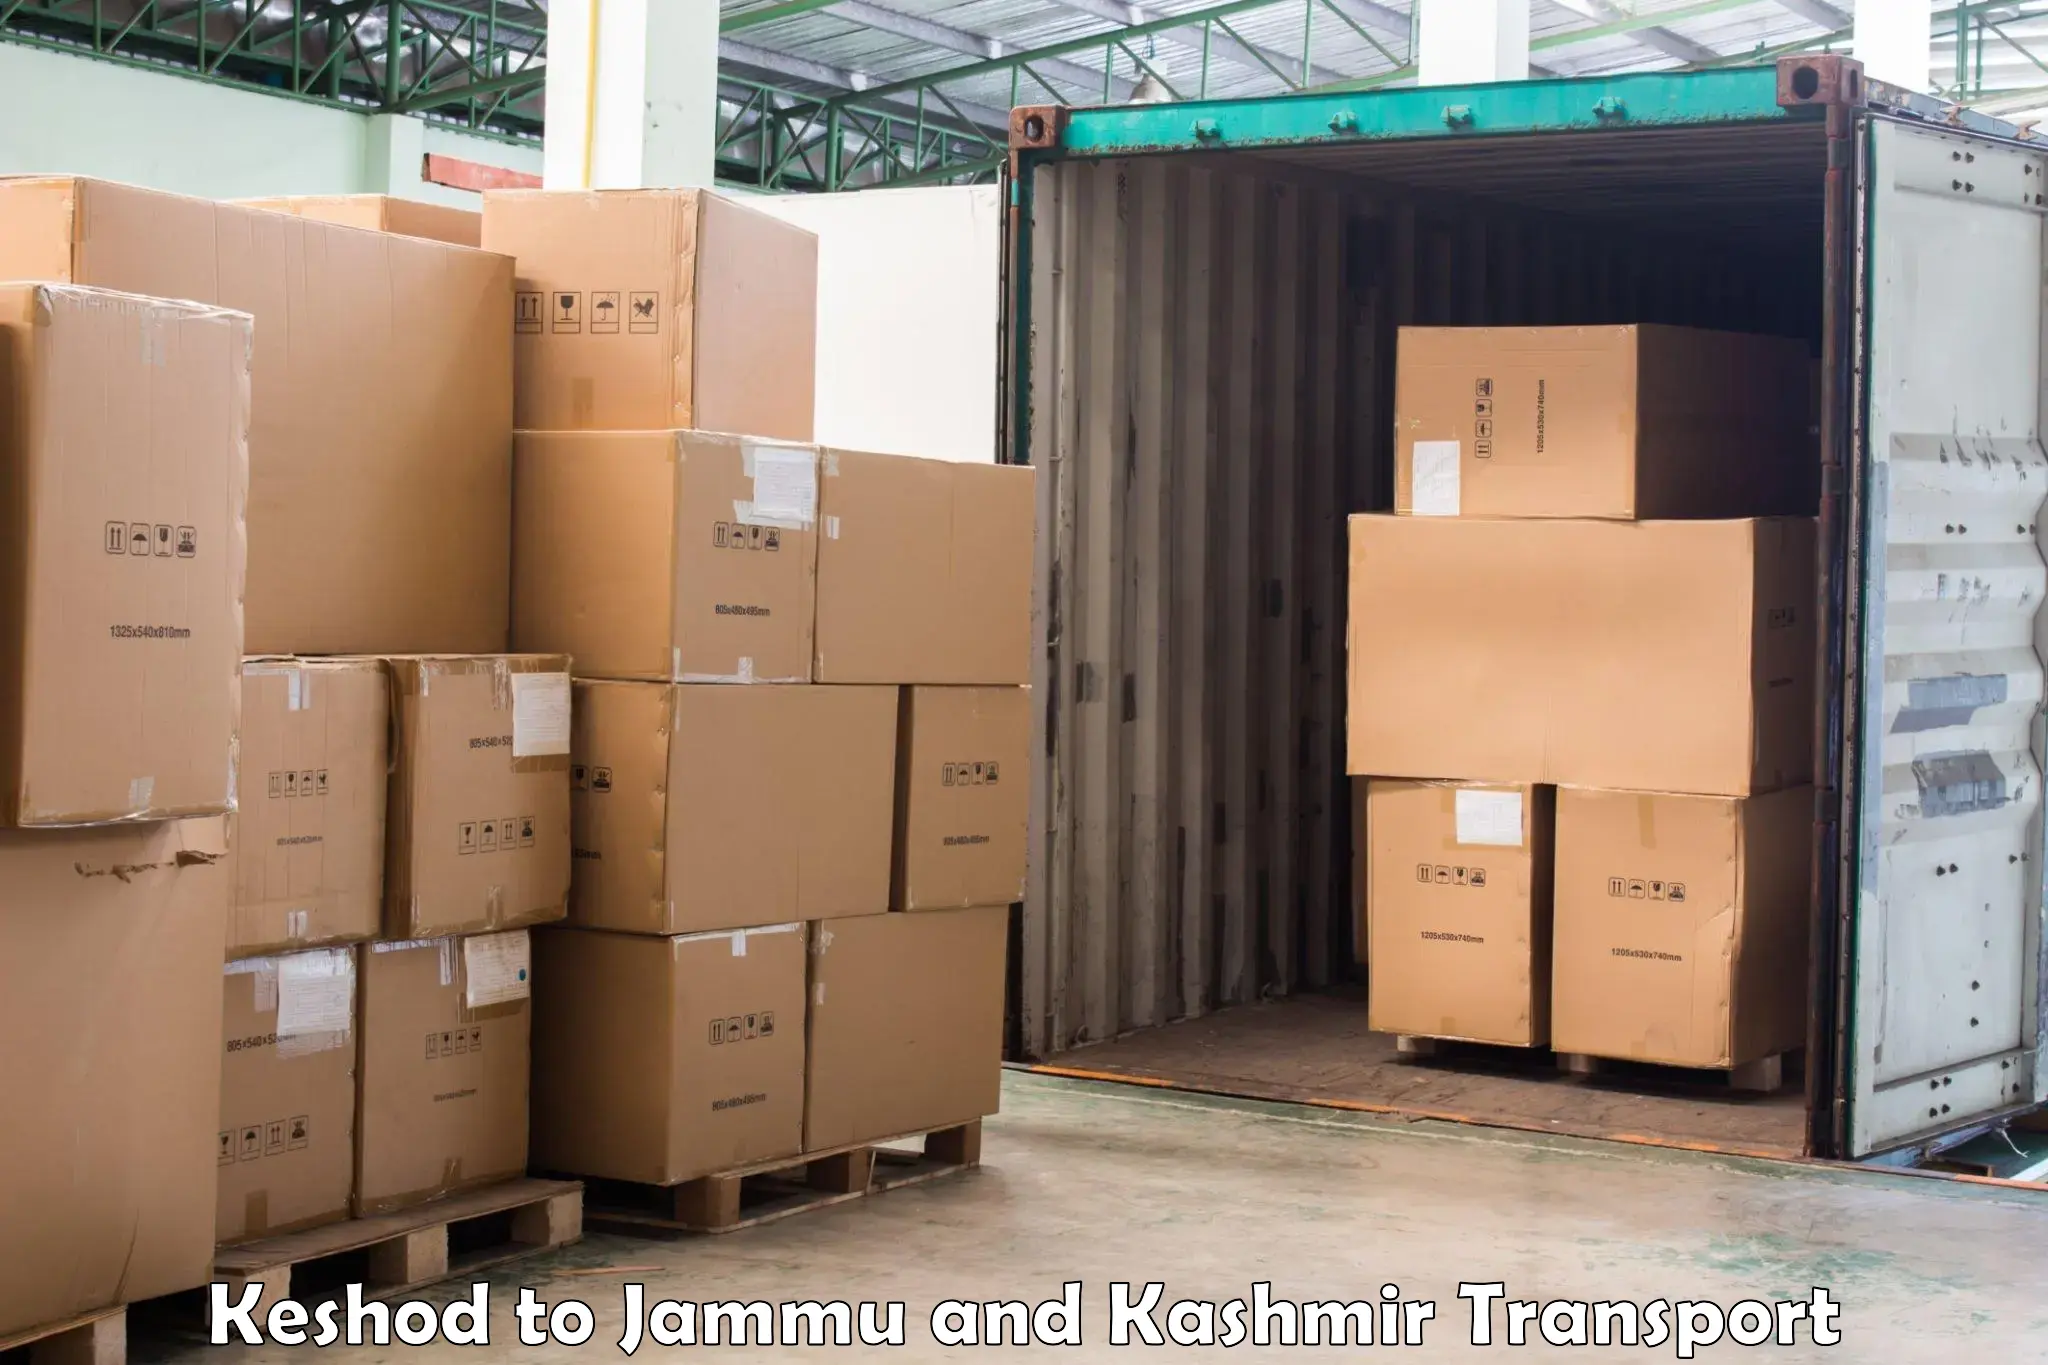 Truck transport companies in India Keshod to Kulgam